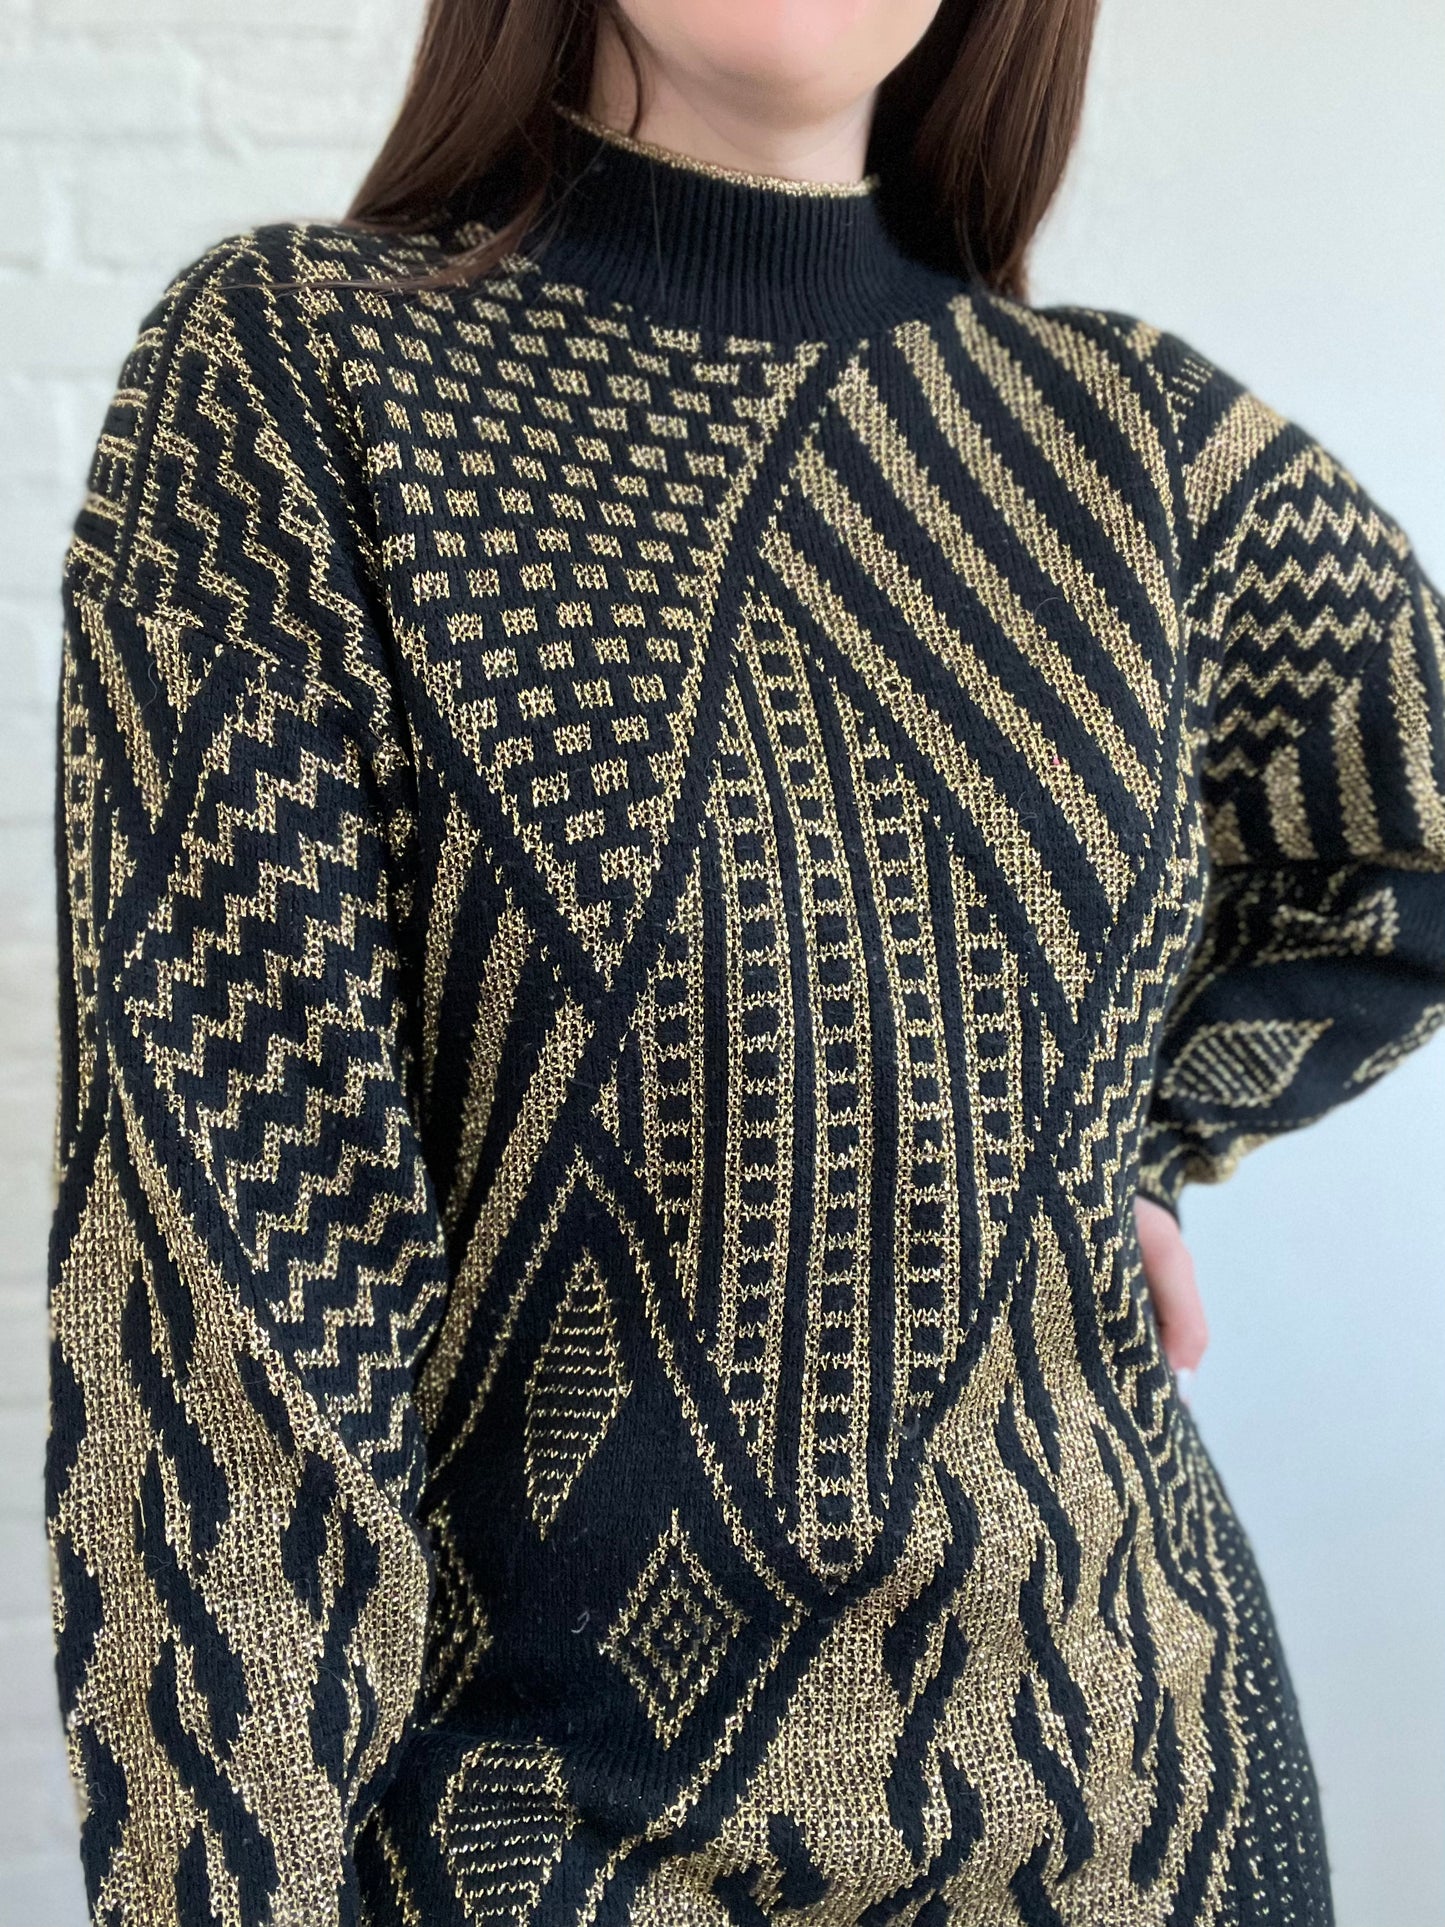 Black & Gold Metallic Knit Sweater - L